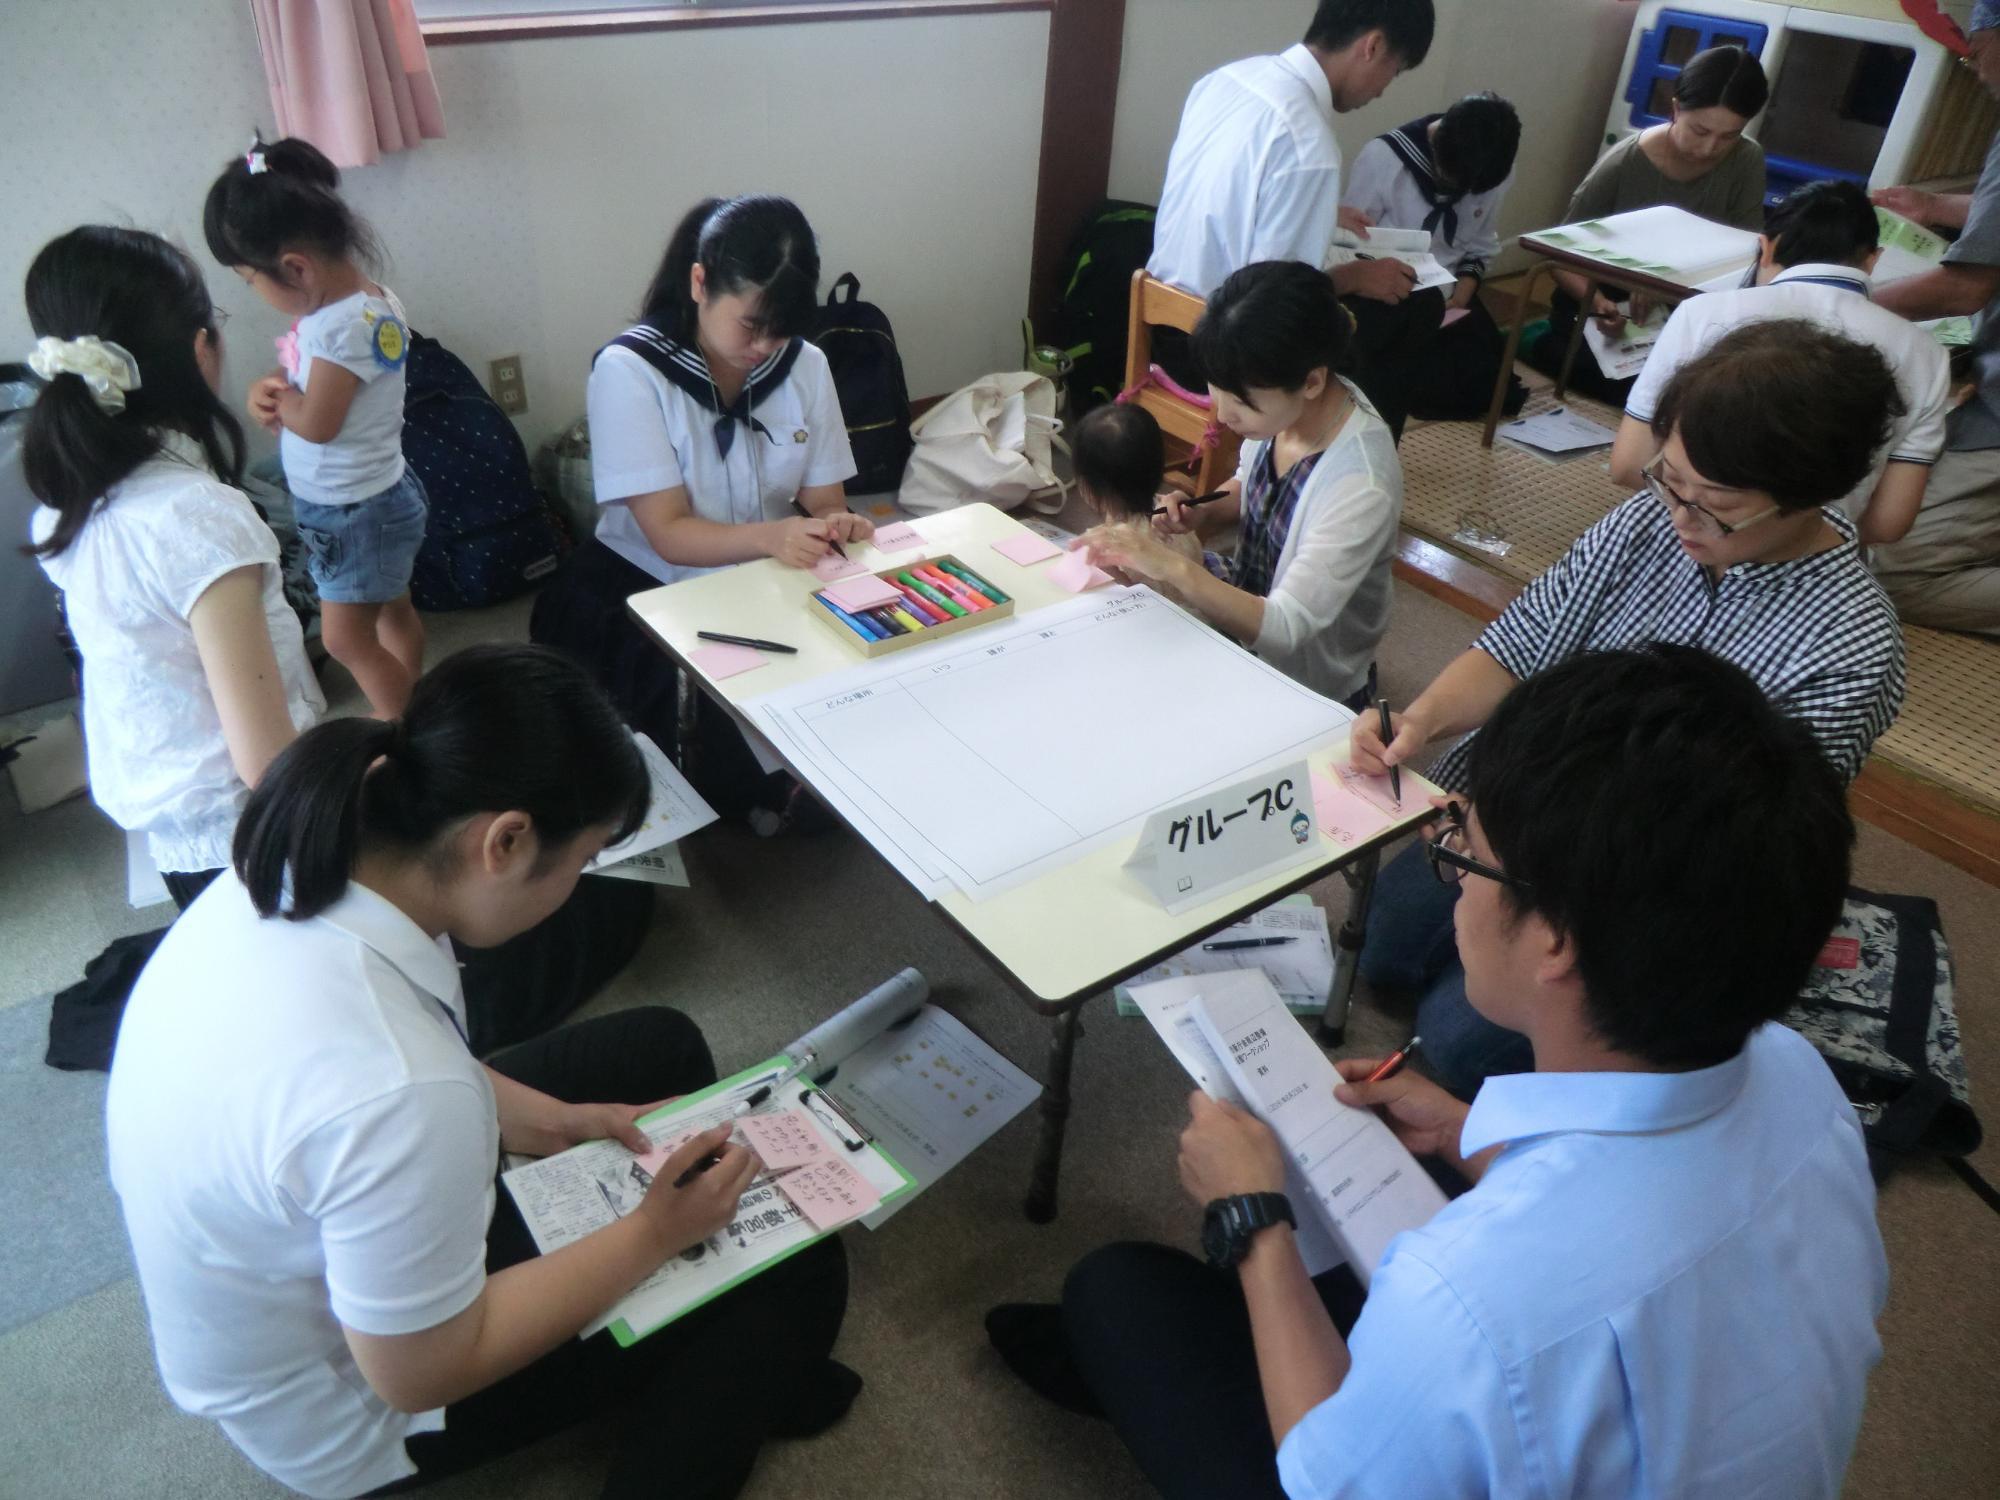 5名の参加者が机の周りに集まり、それぞれノートなどに書き込みをしている様子の写真